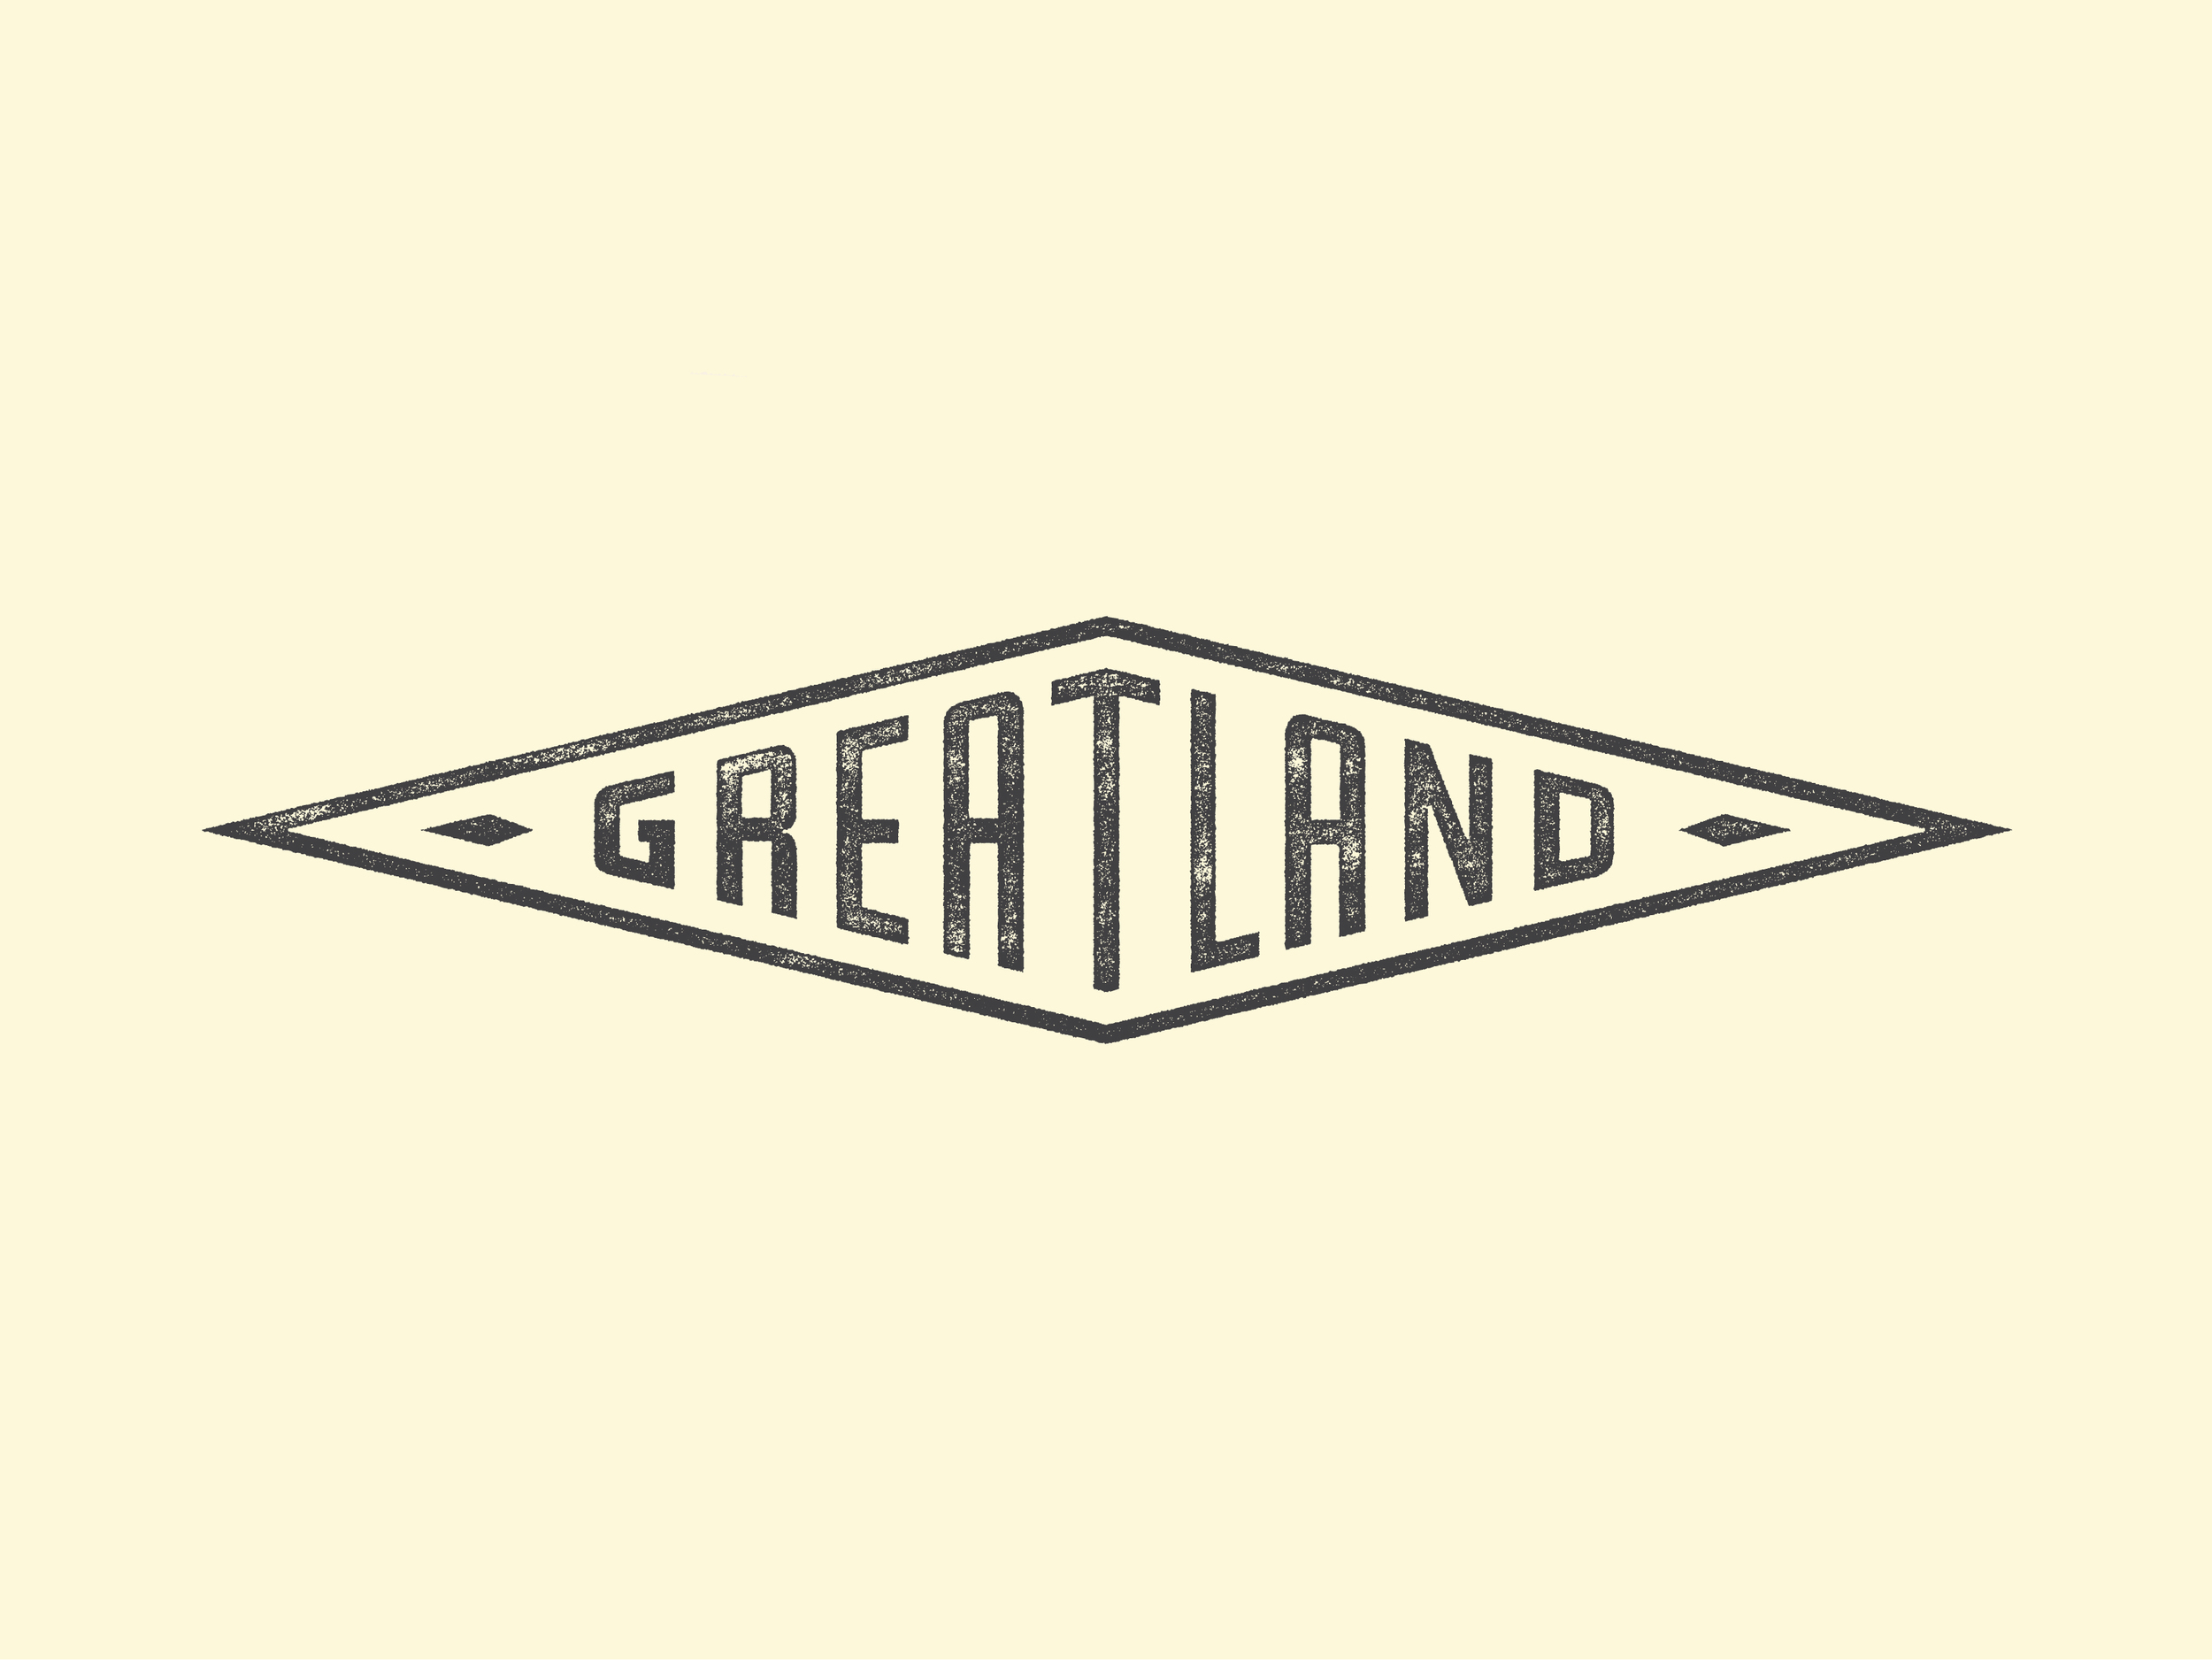 Greatland_2.jpg